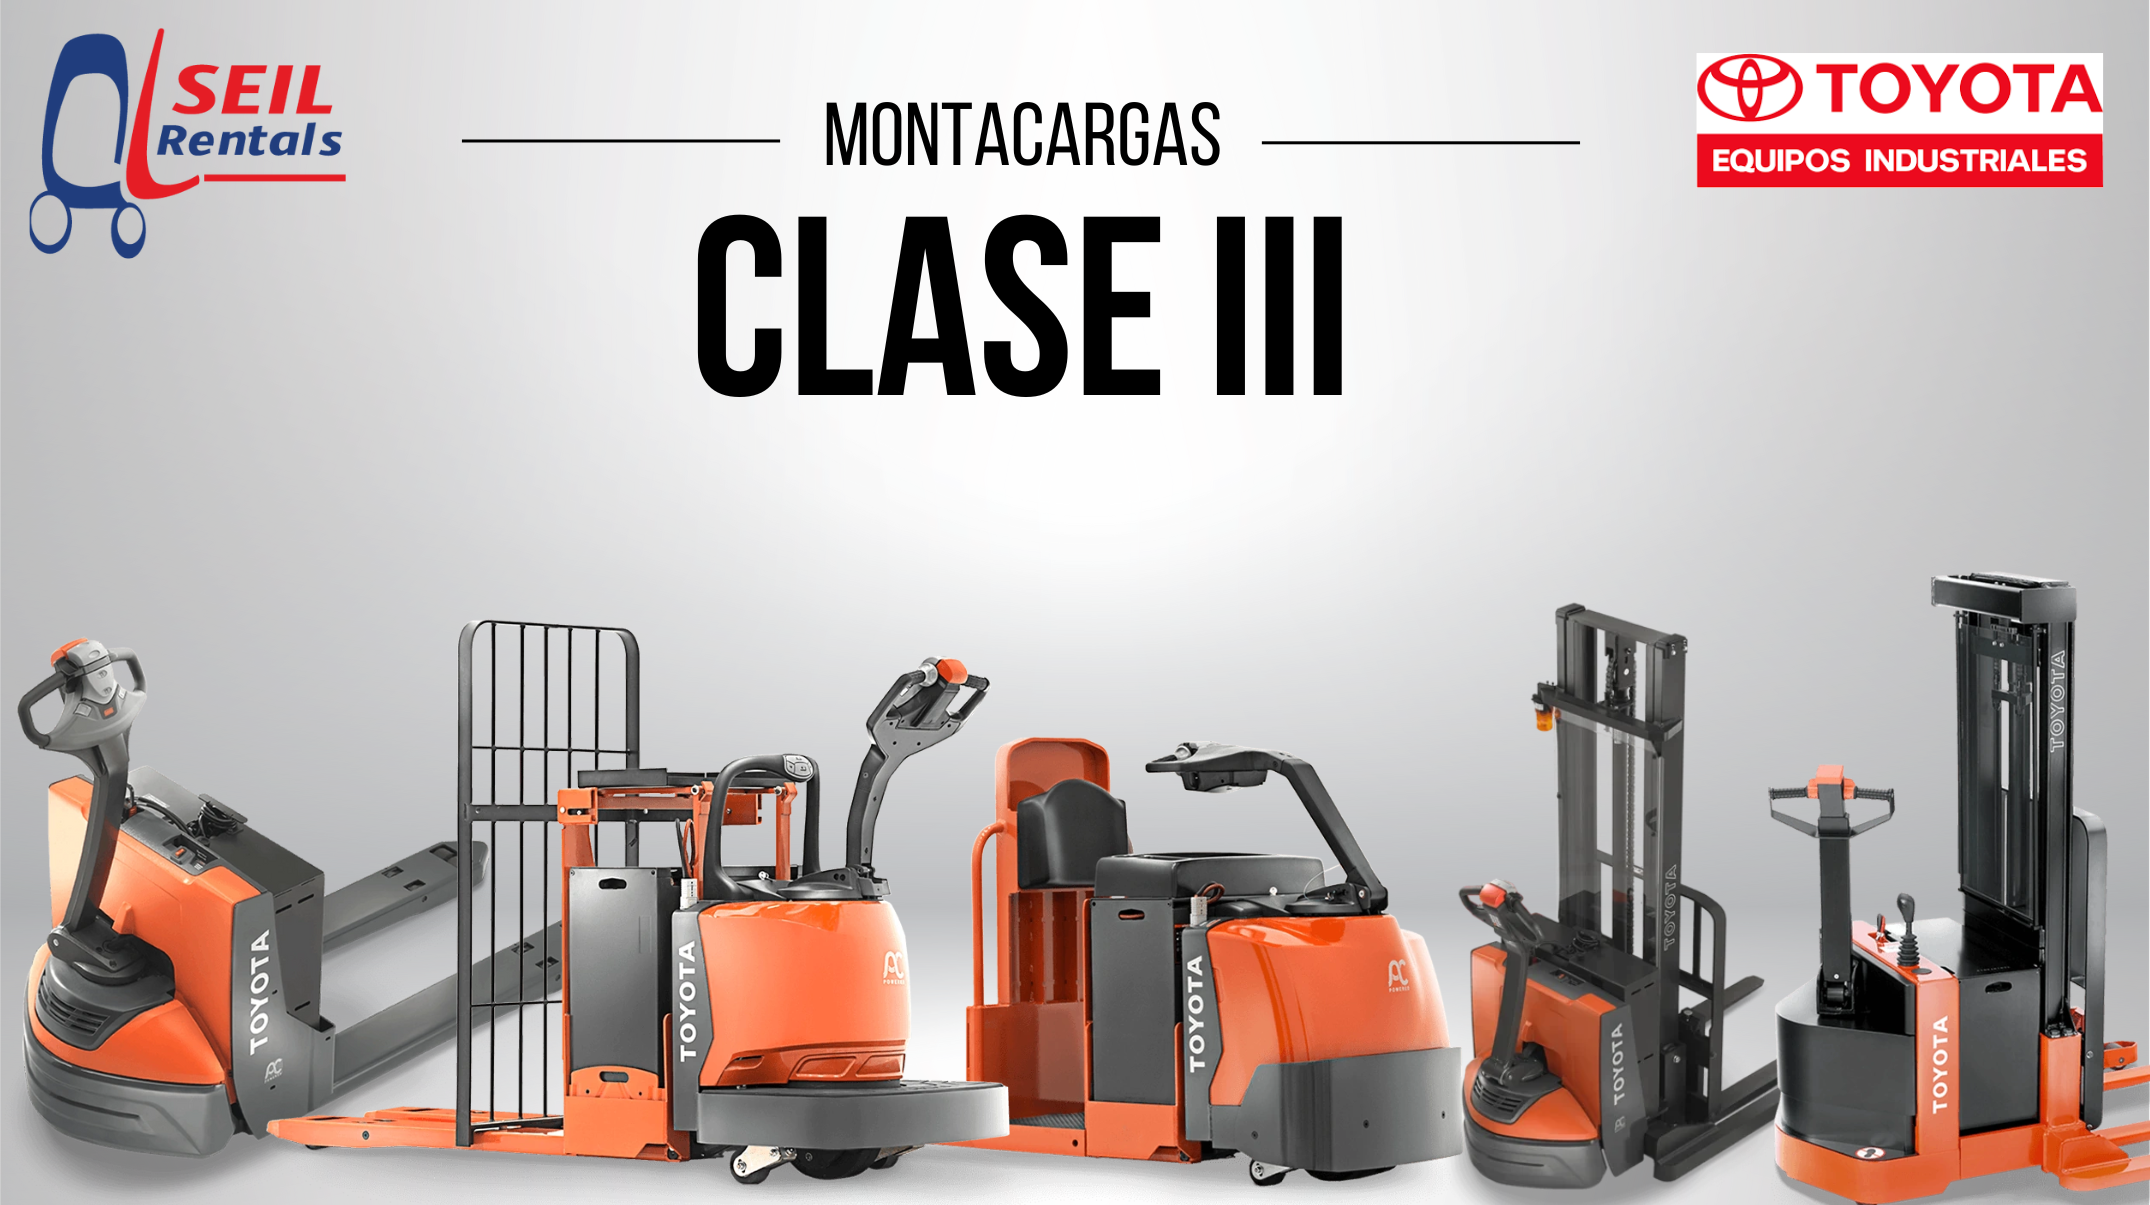 Montacargas Clase III